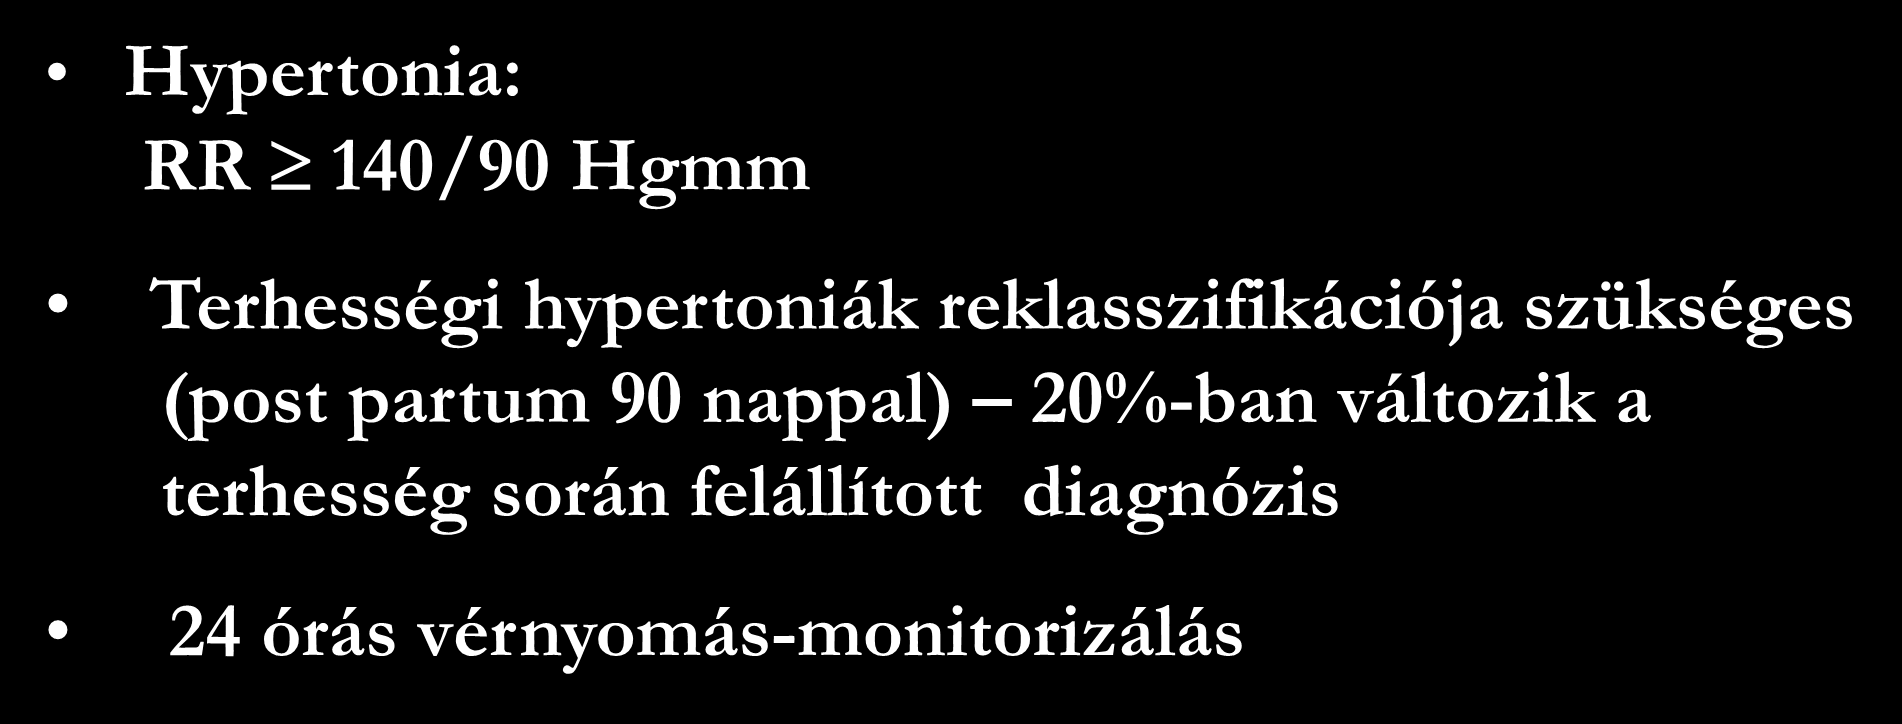 Hypertonia diagnózisa Hypertonia: RR 140/90 Hgmm Terhességi hypertoniák reklasszifikációja szükséges (post